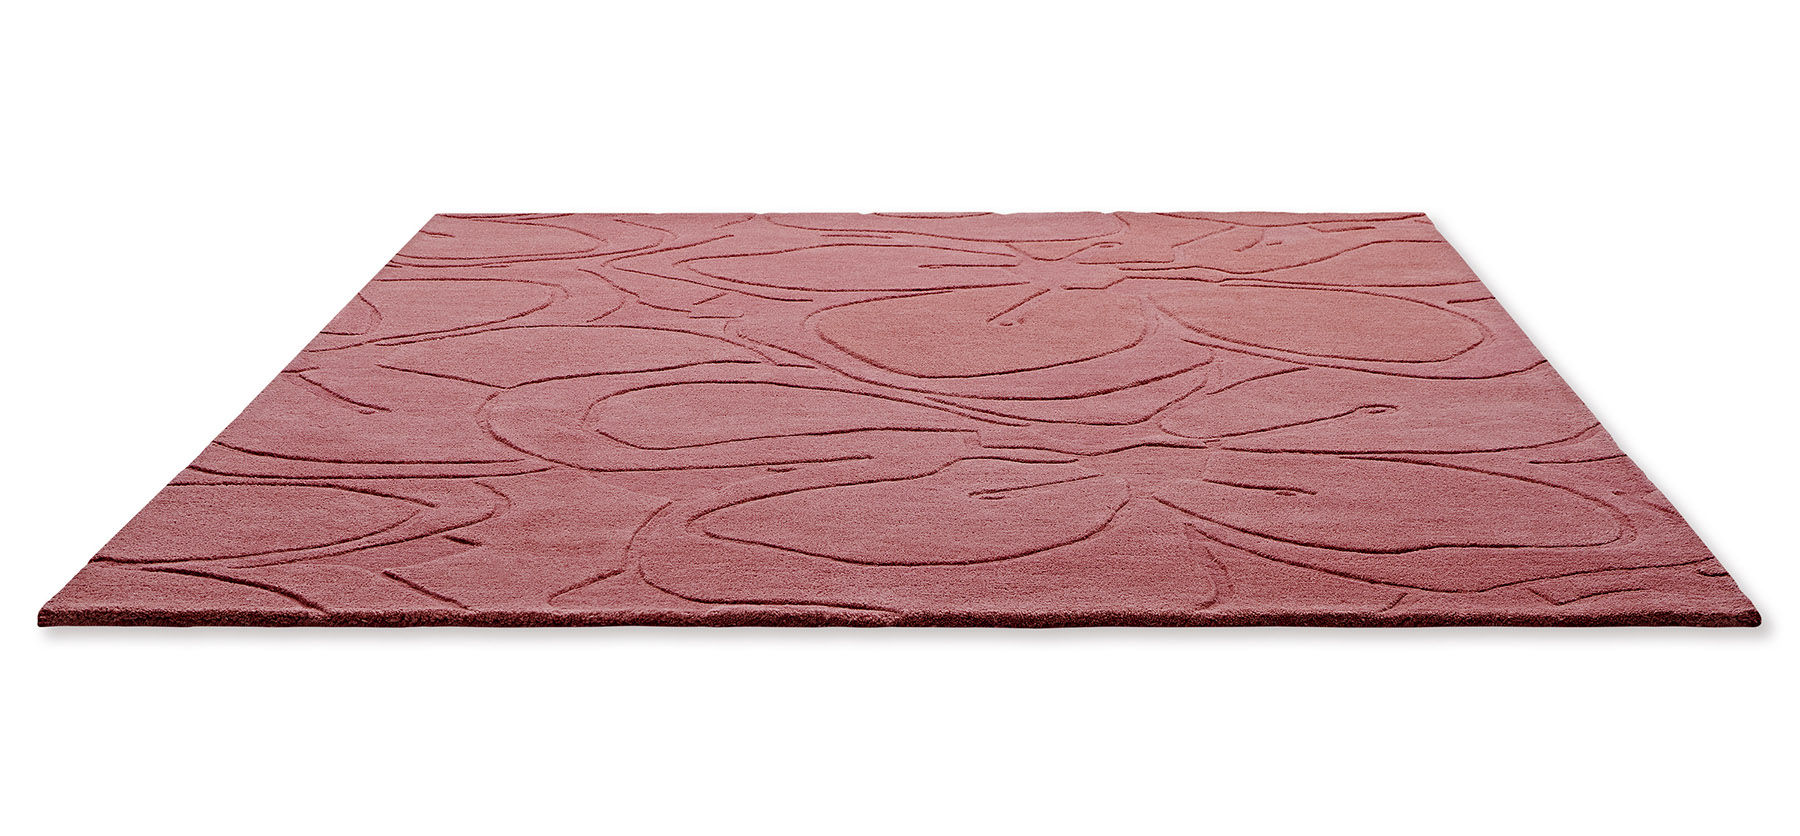 Romantic Magnolia Pink Designer Rug ☞ Size: 5' 7" x 8' (170 x 240 cm)